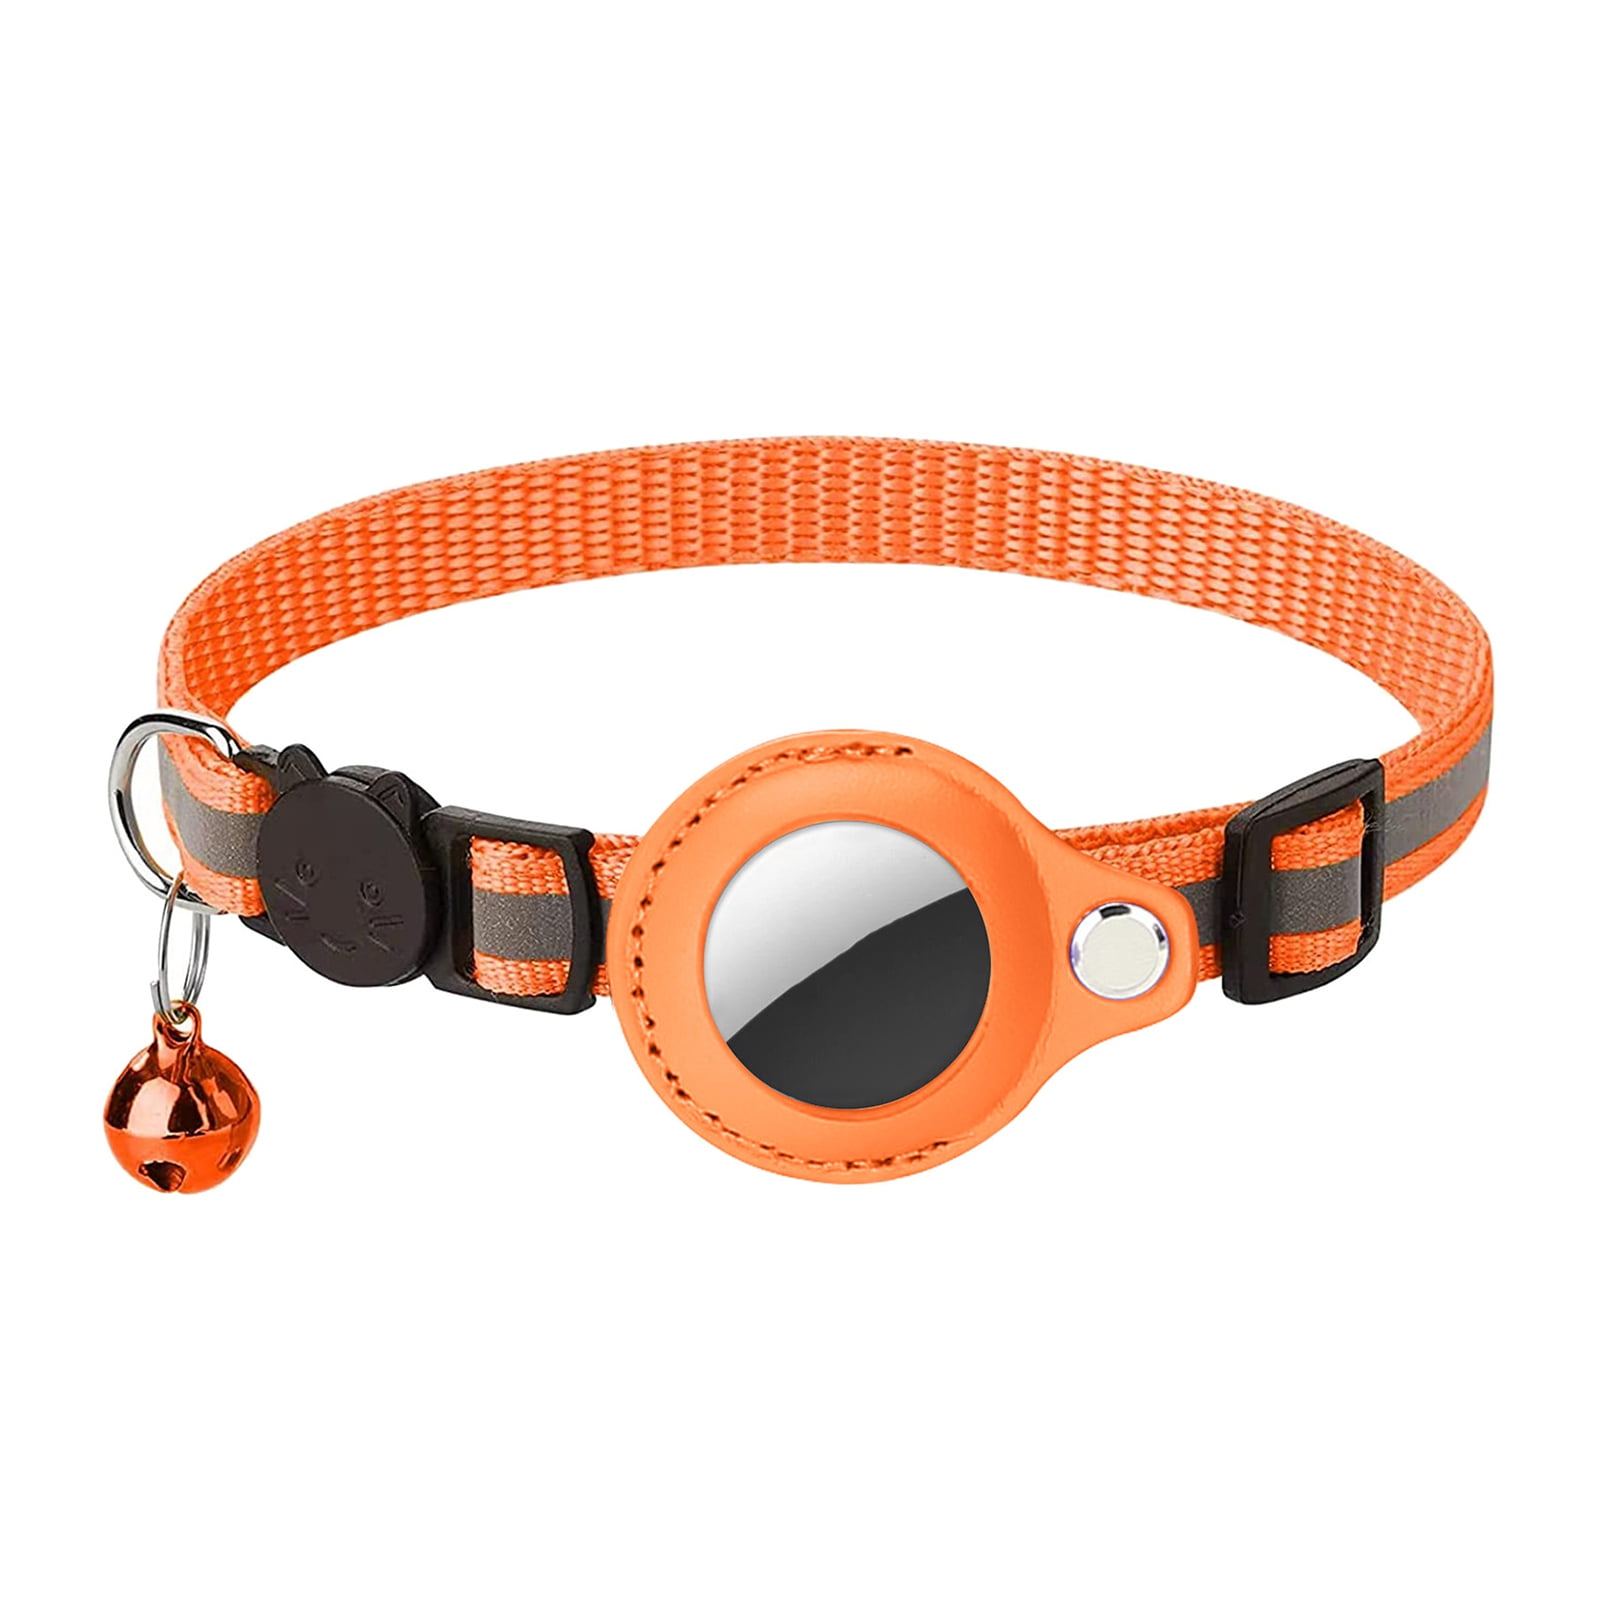 KOCNYDEY Collar para Gatos AirTag de Piel Reflectante, Collar GPS